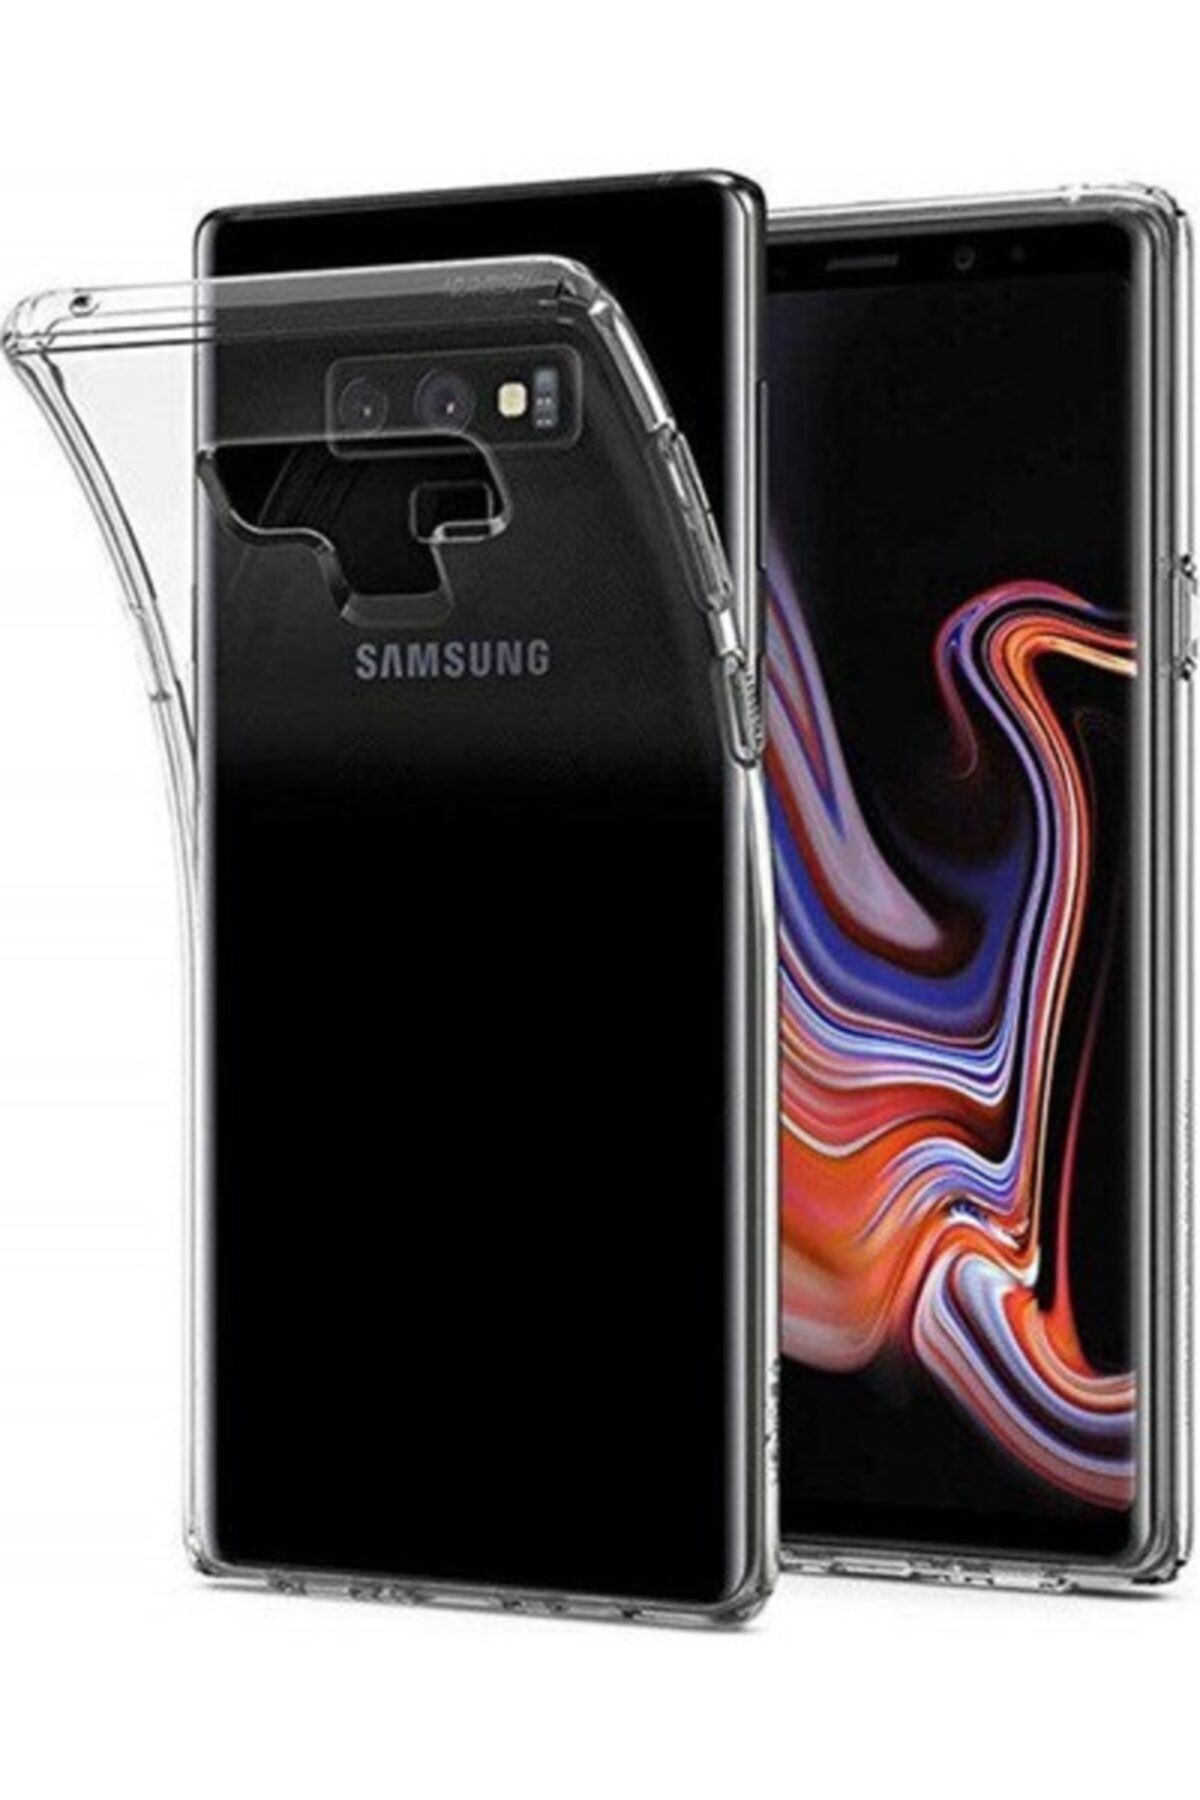 Samsung Galaxy J7 Prime 5 5 Inc Cift Hatli 13 Mp Akilli Cep Telefonu Fiyatlari